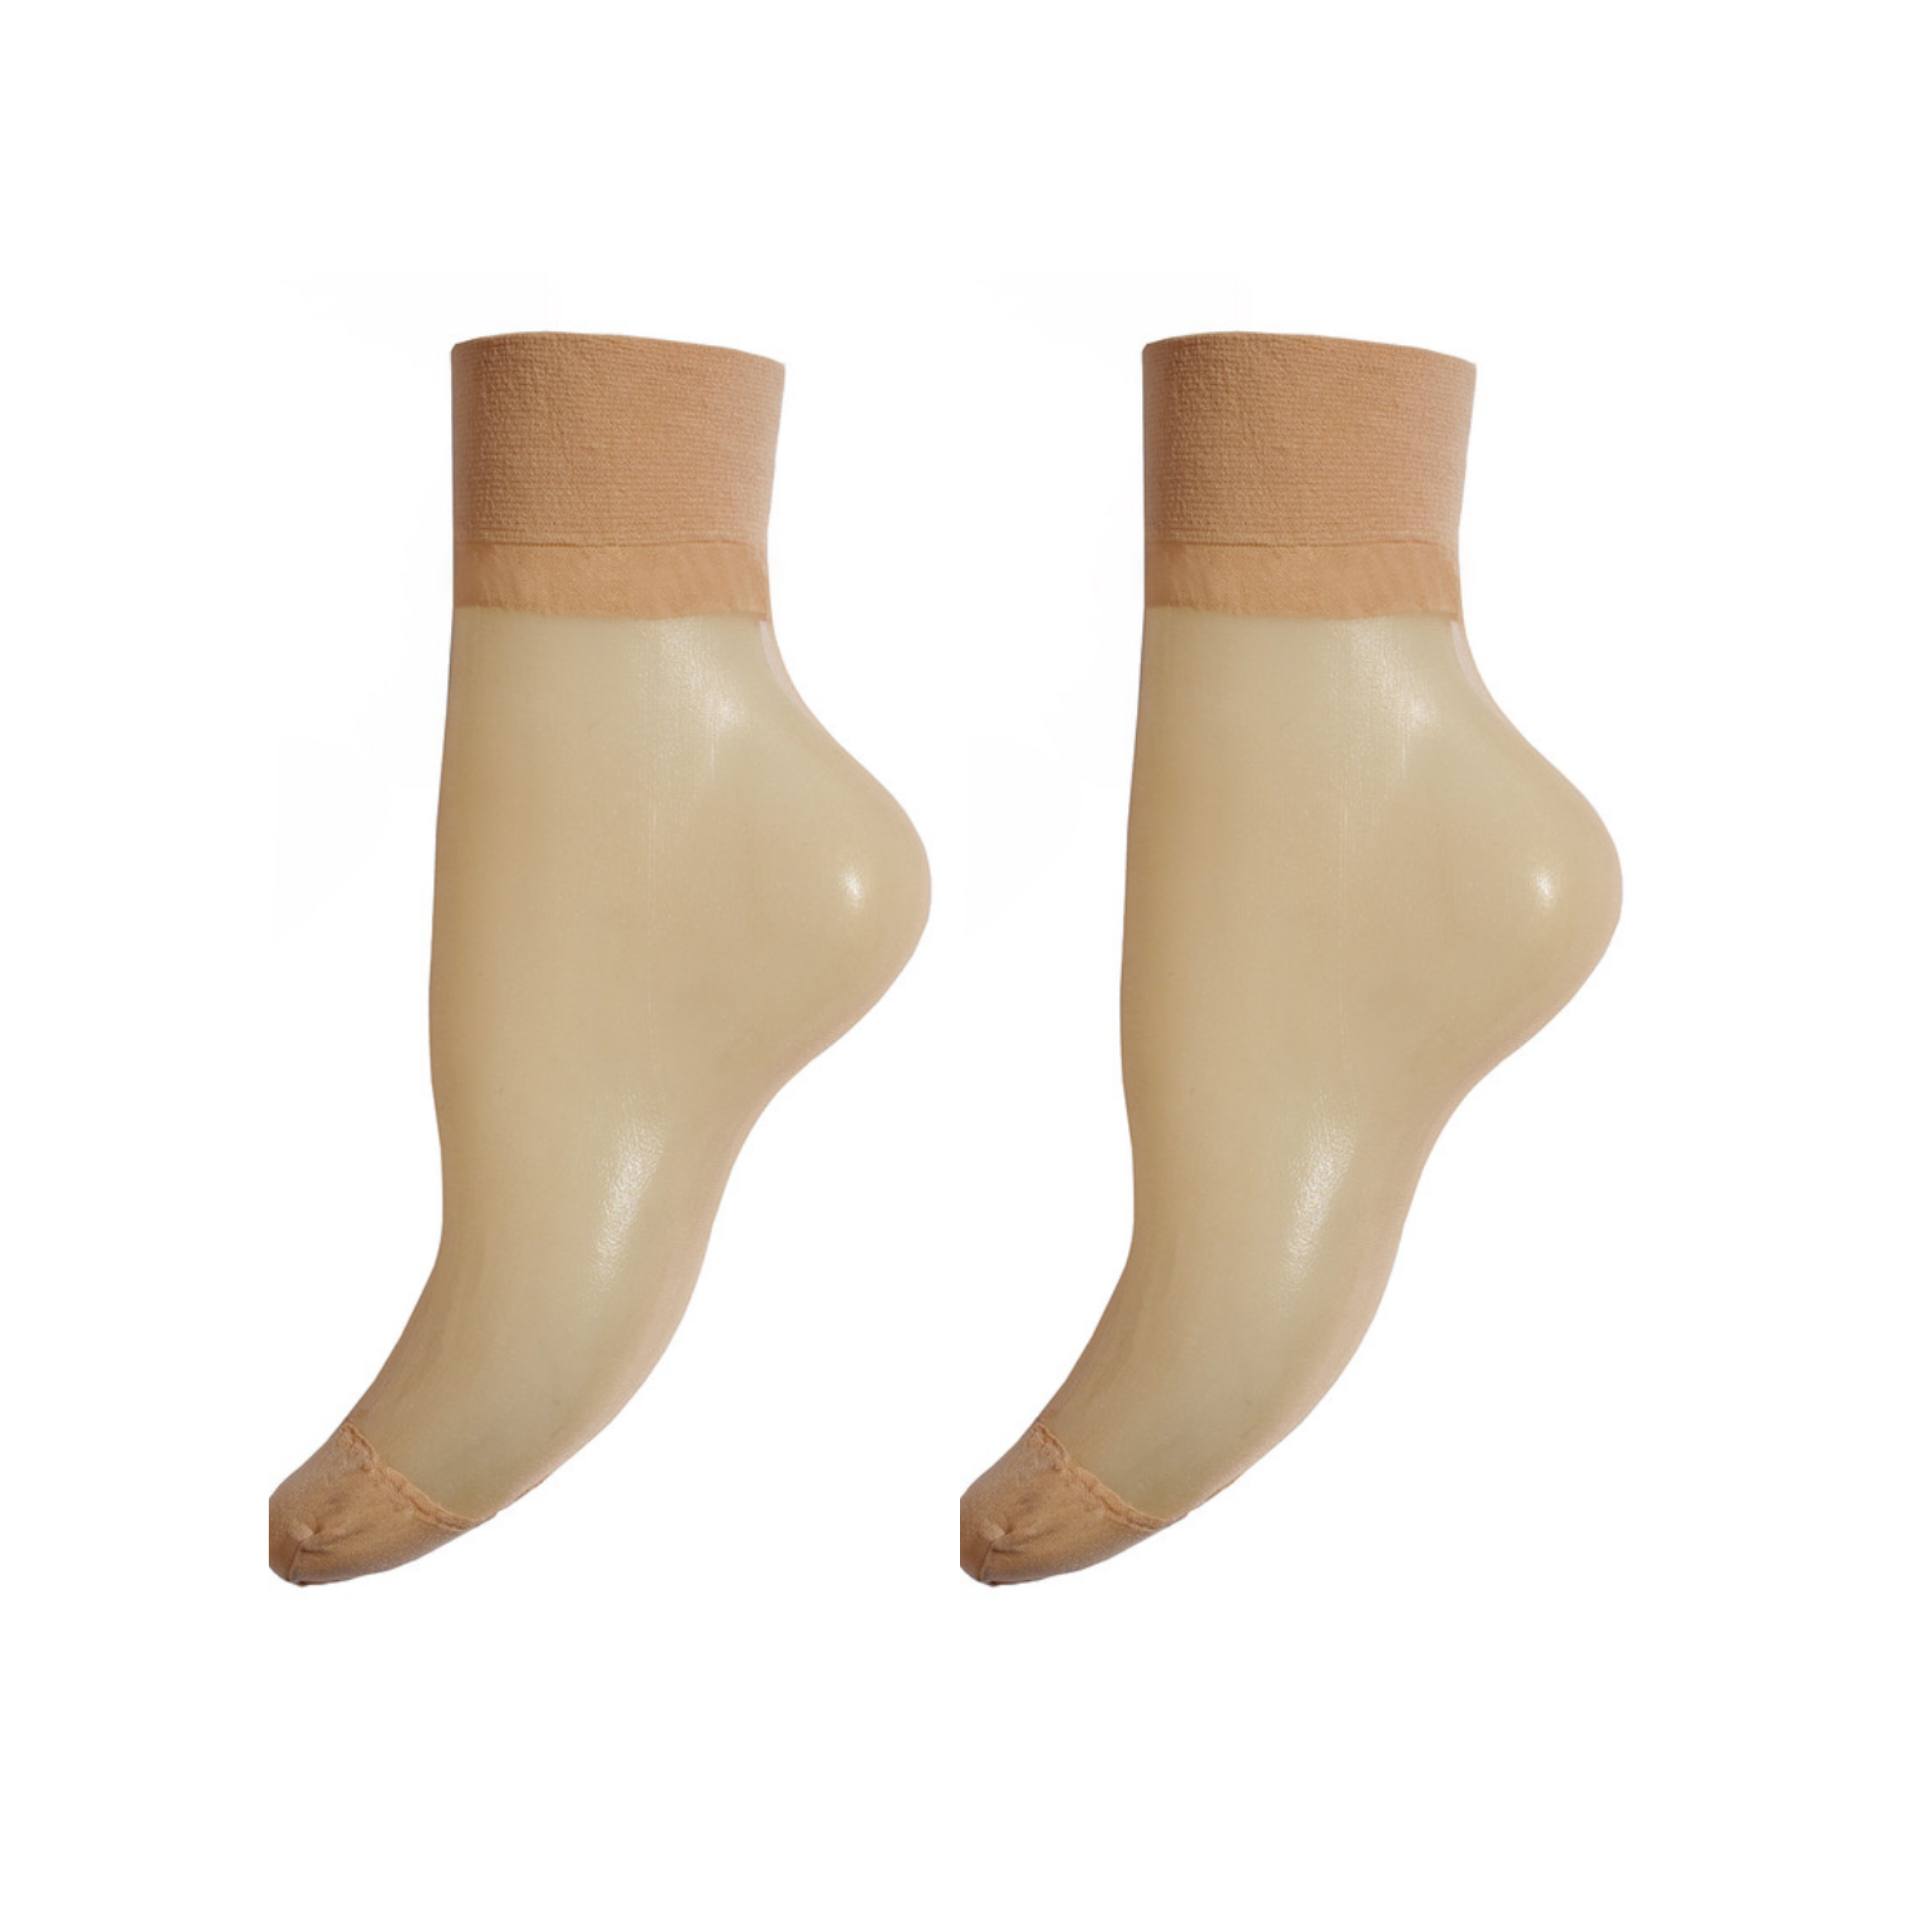 جوراب ساق کوتاه زنانه اسمارا مدل IAN 363795_1910 مجموعه 2 عددی -  - 1